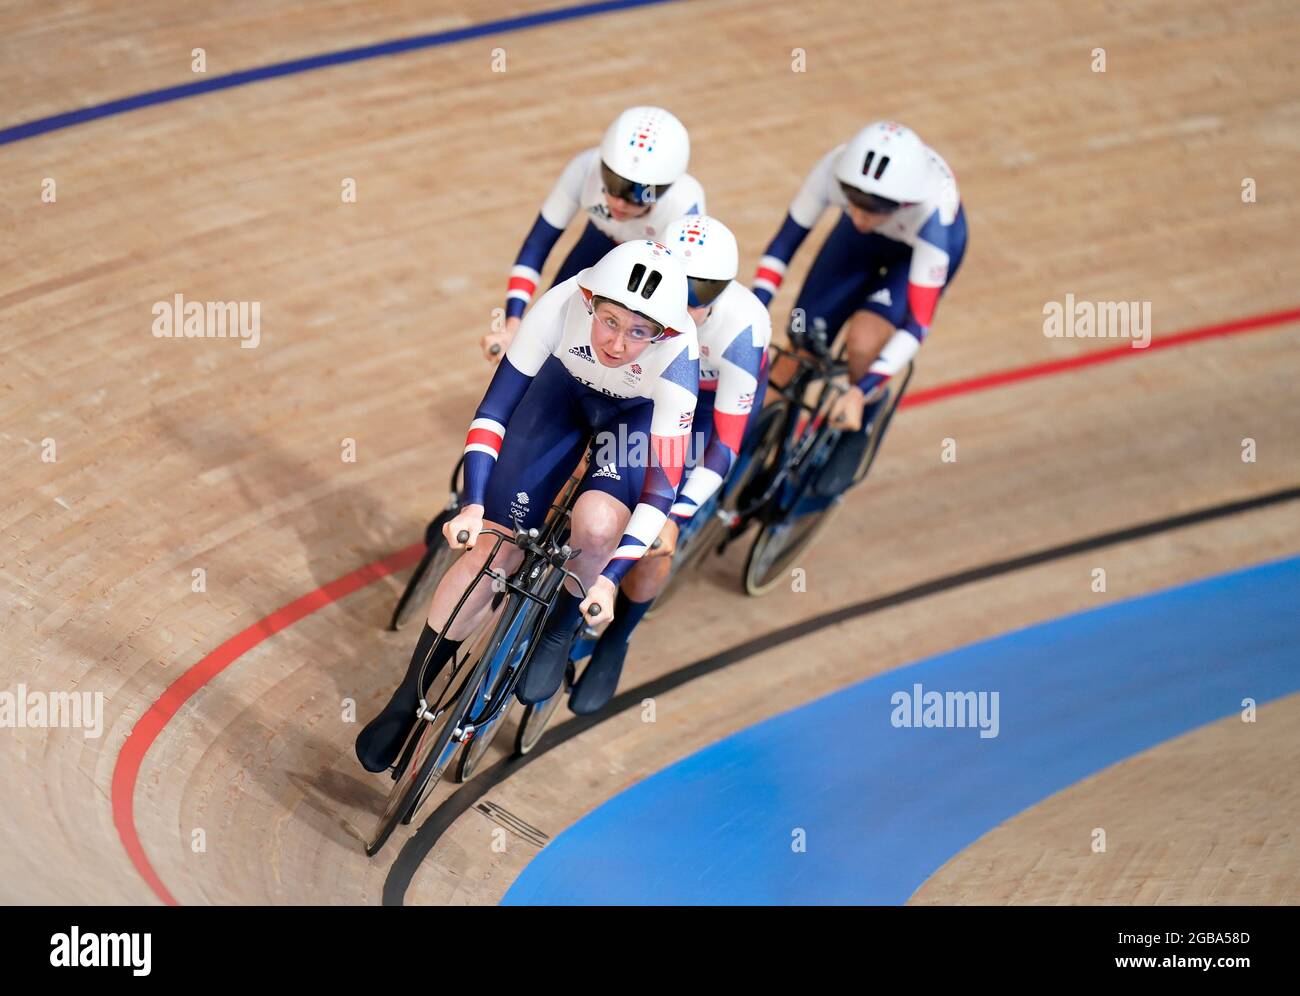 Kate Archibald en Grande-Bretagne dans la poursuite de l'équipe féminine à l'Izu Velodrome le onzième jour des Jeux Olympiques de Tokyo en 2020 au Japon. Date de la photo: Mardi 3 août 2021. Banque D'Images